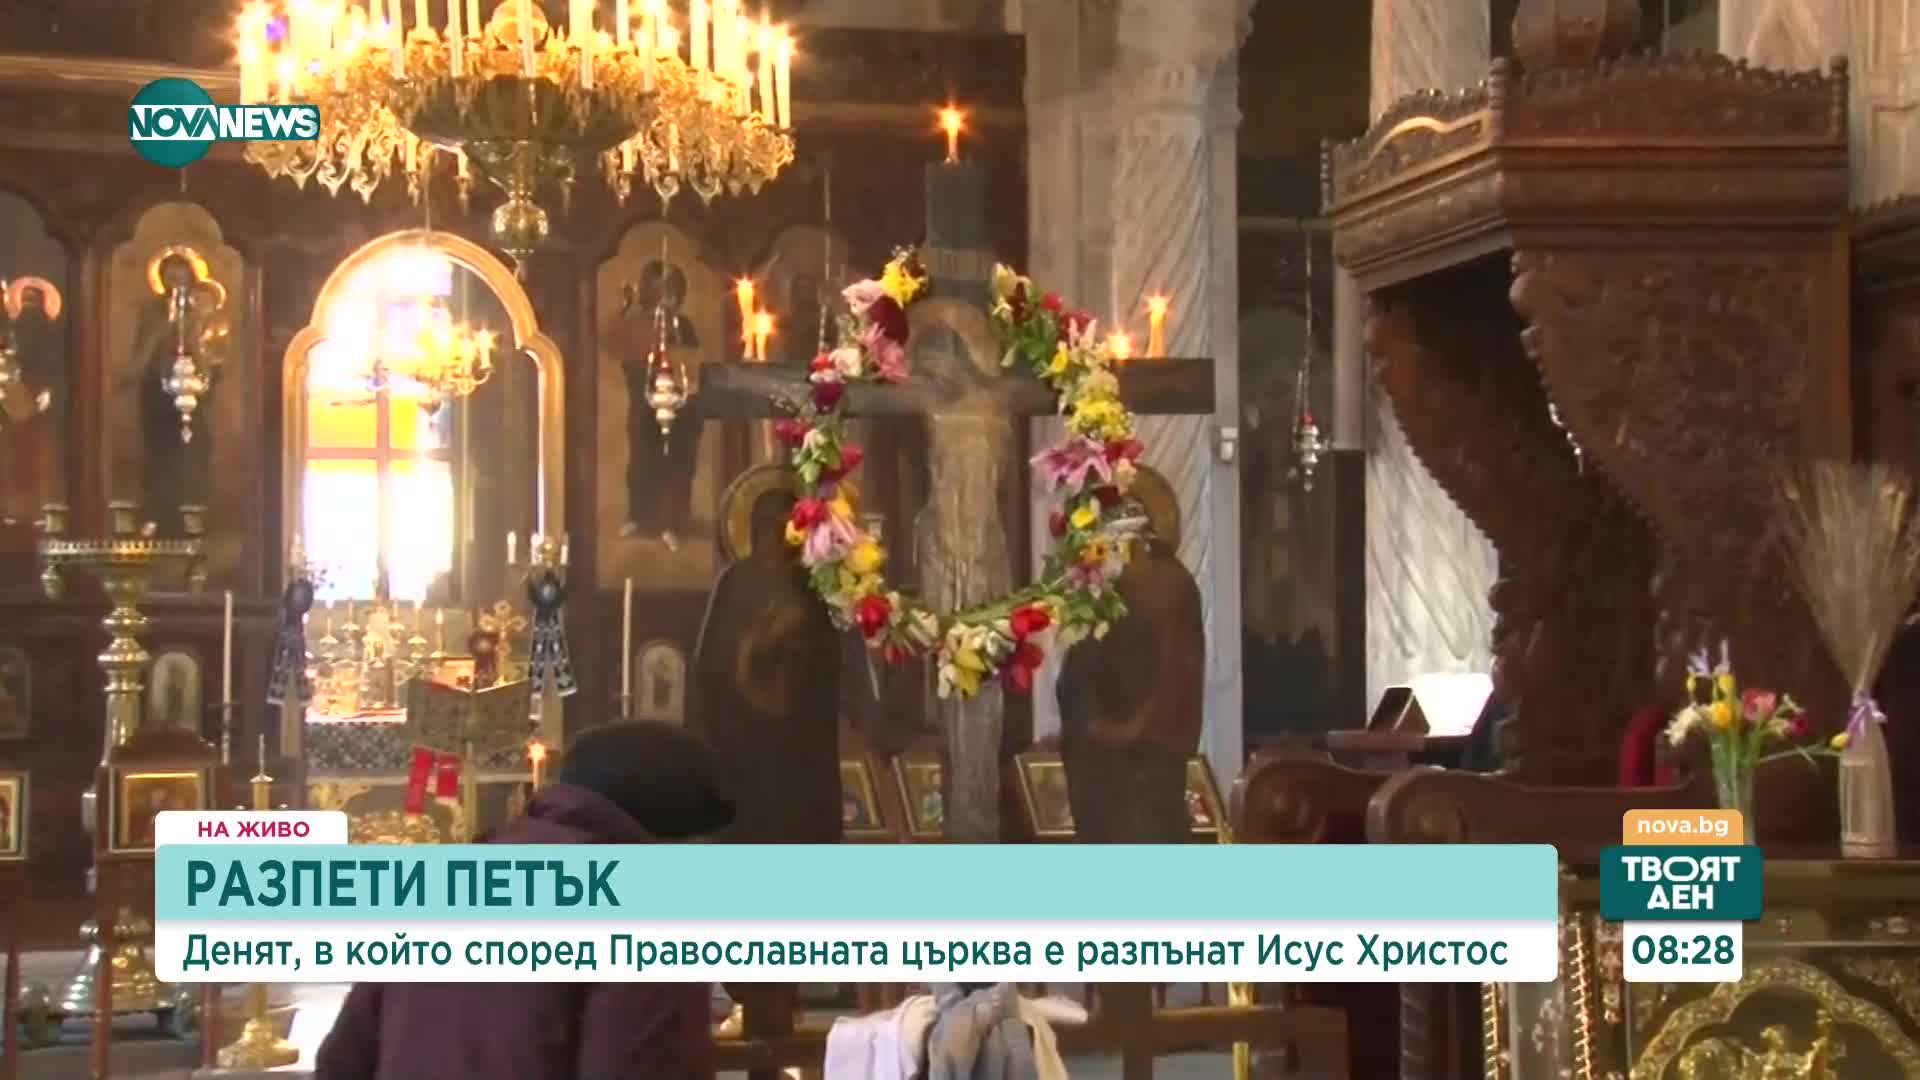 Православните християни отбелязват Разпети петък